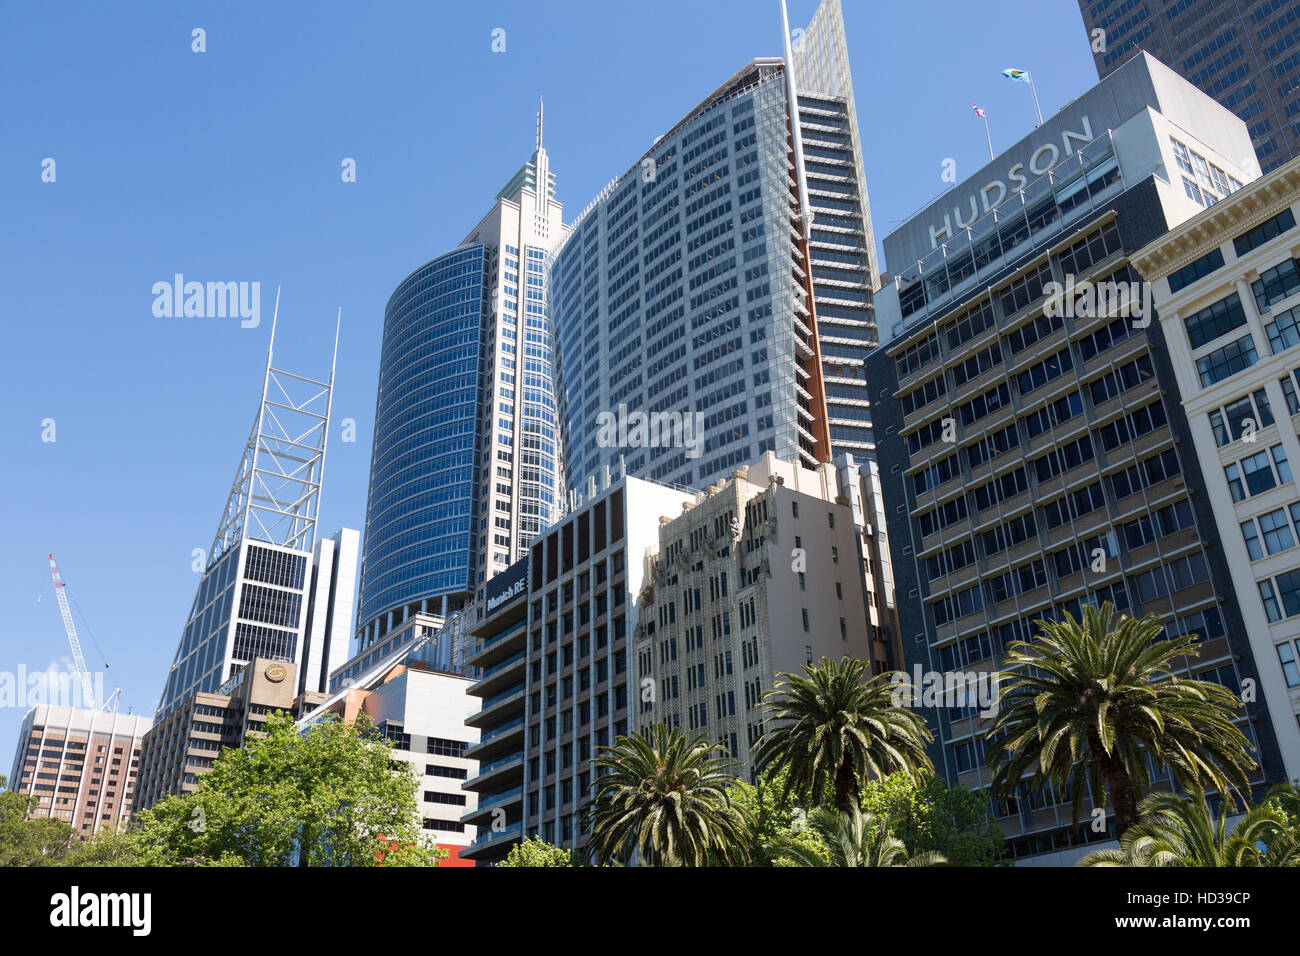 Les immeubles de bureaux y compris RBS Aurora place et Chifley tower sur Macquarie Street à Sydney, Nouvelle-Galles du Sud, Australie Banque D'Images